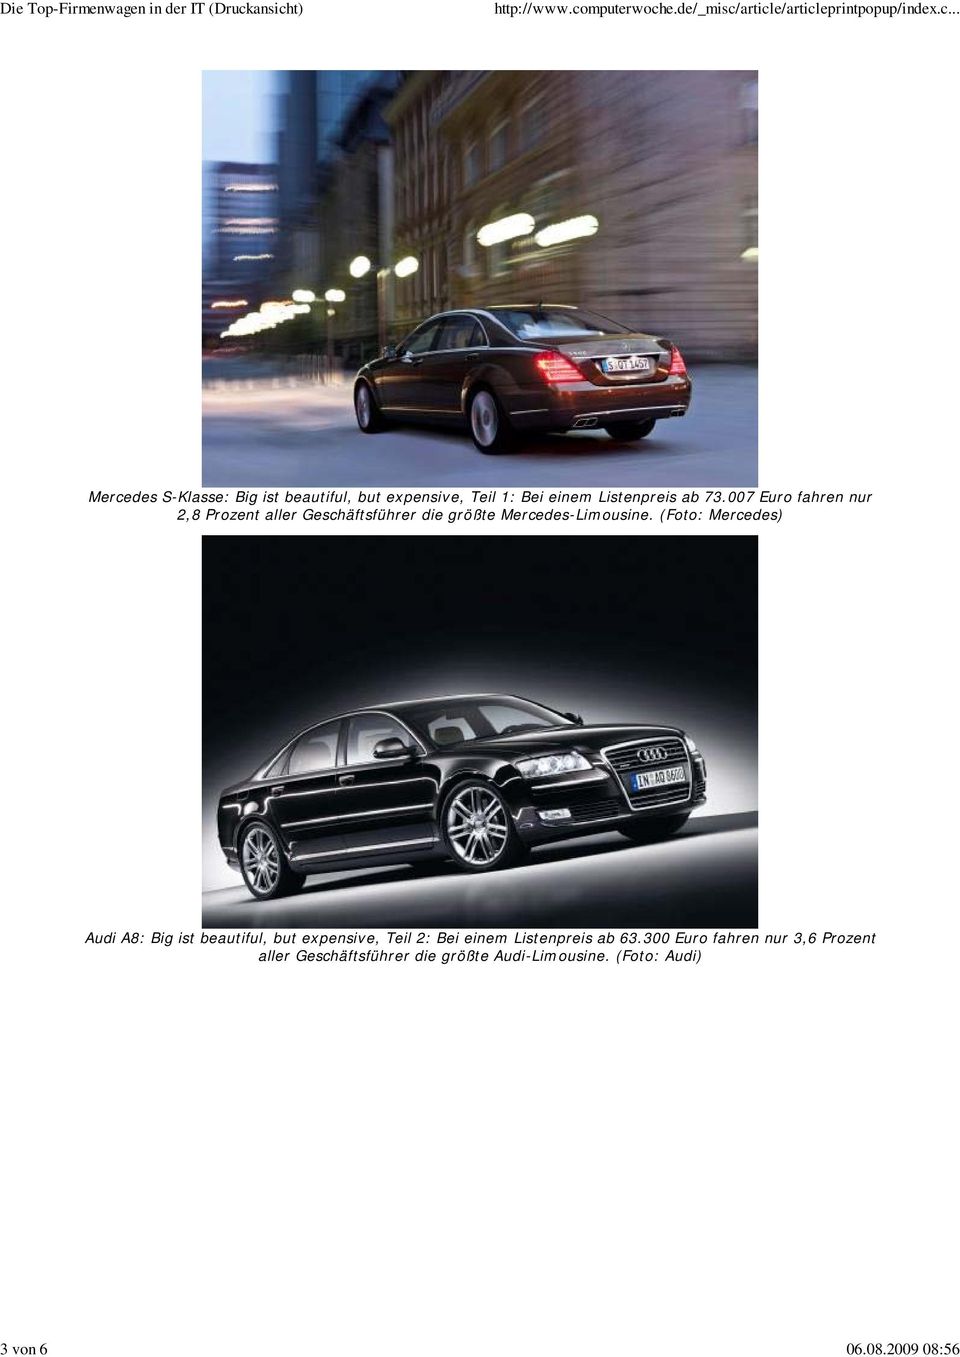 73.007 Euro fahren nur 2,8 Prozent aller Geschäftsführer die größte Mercedes-Limousine.